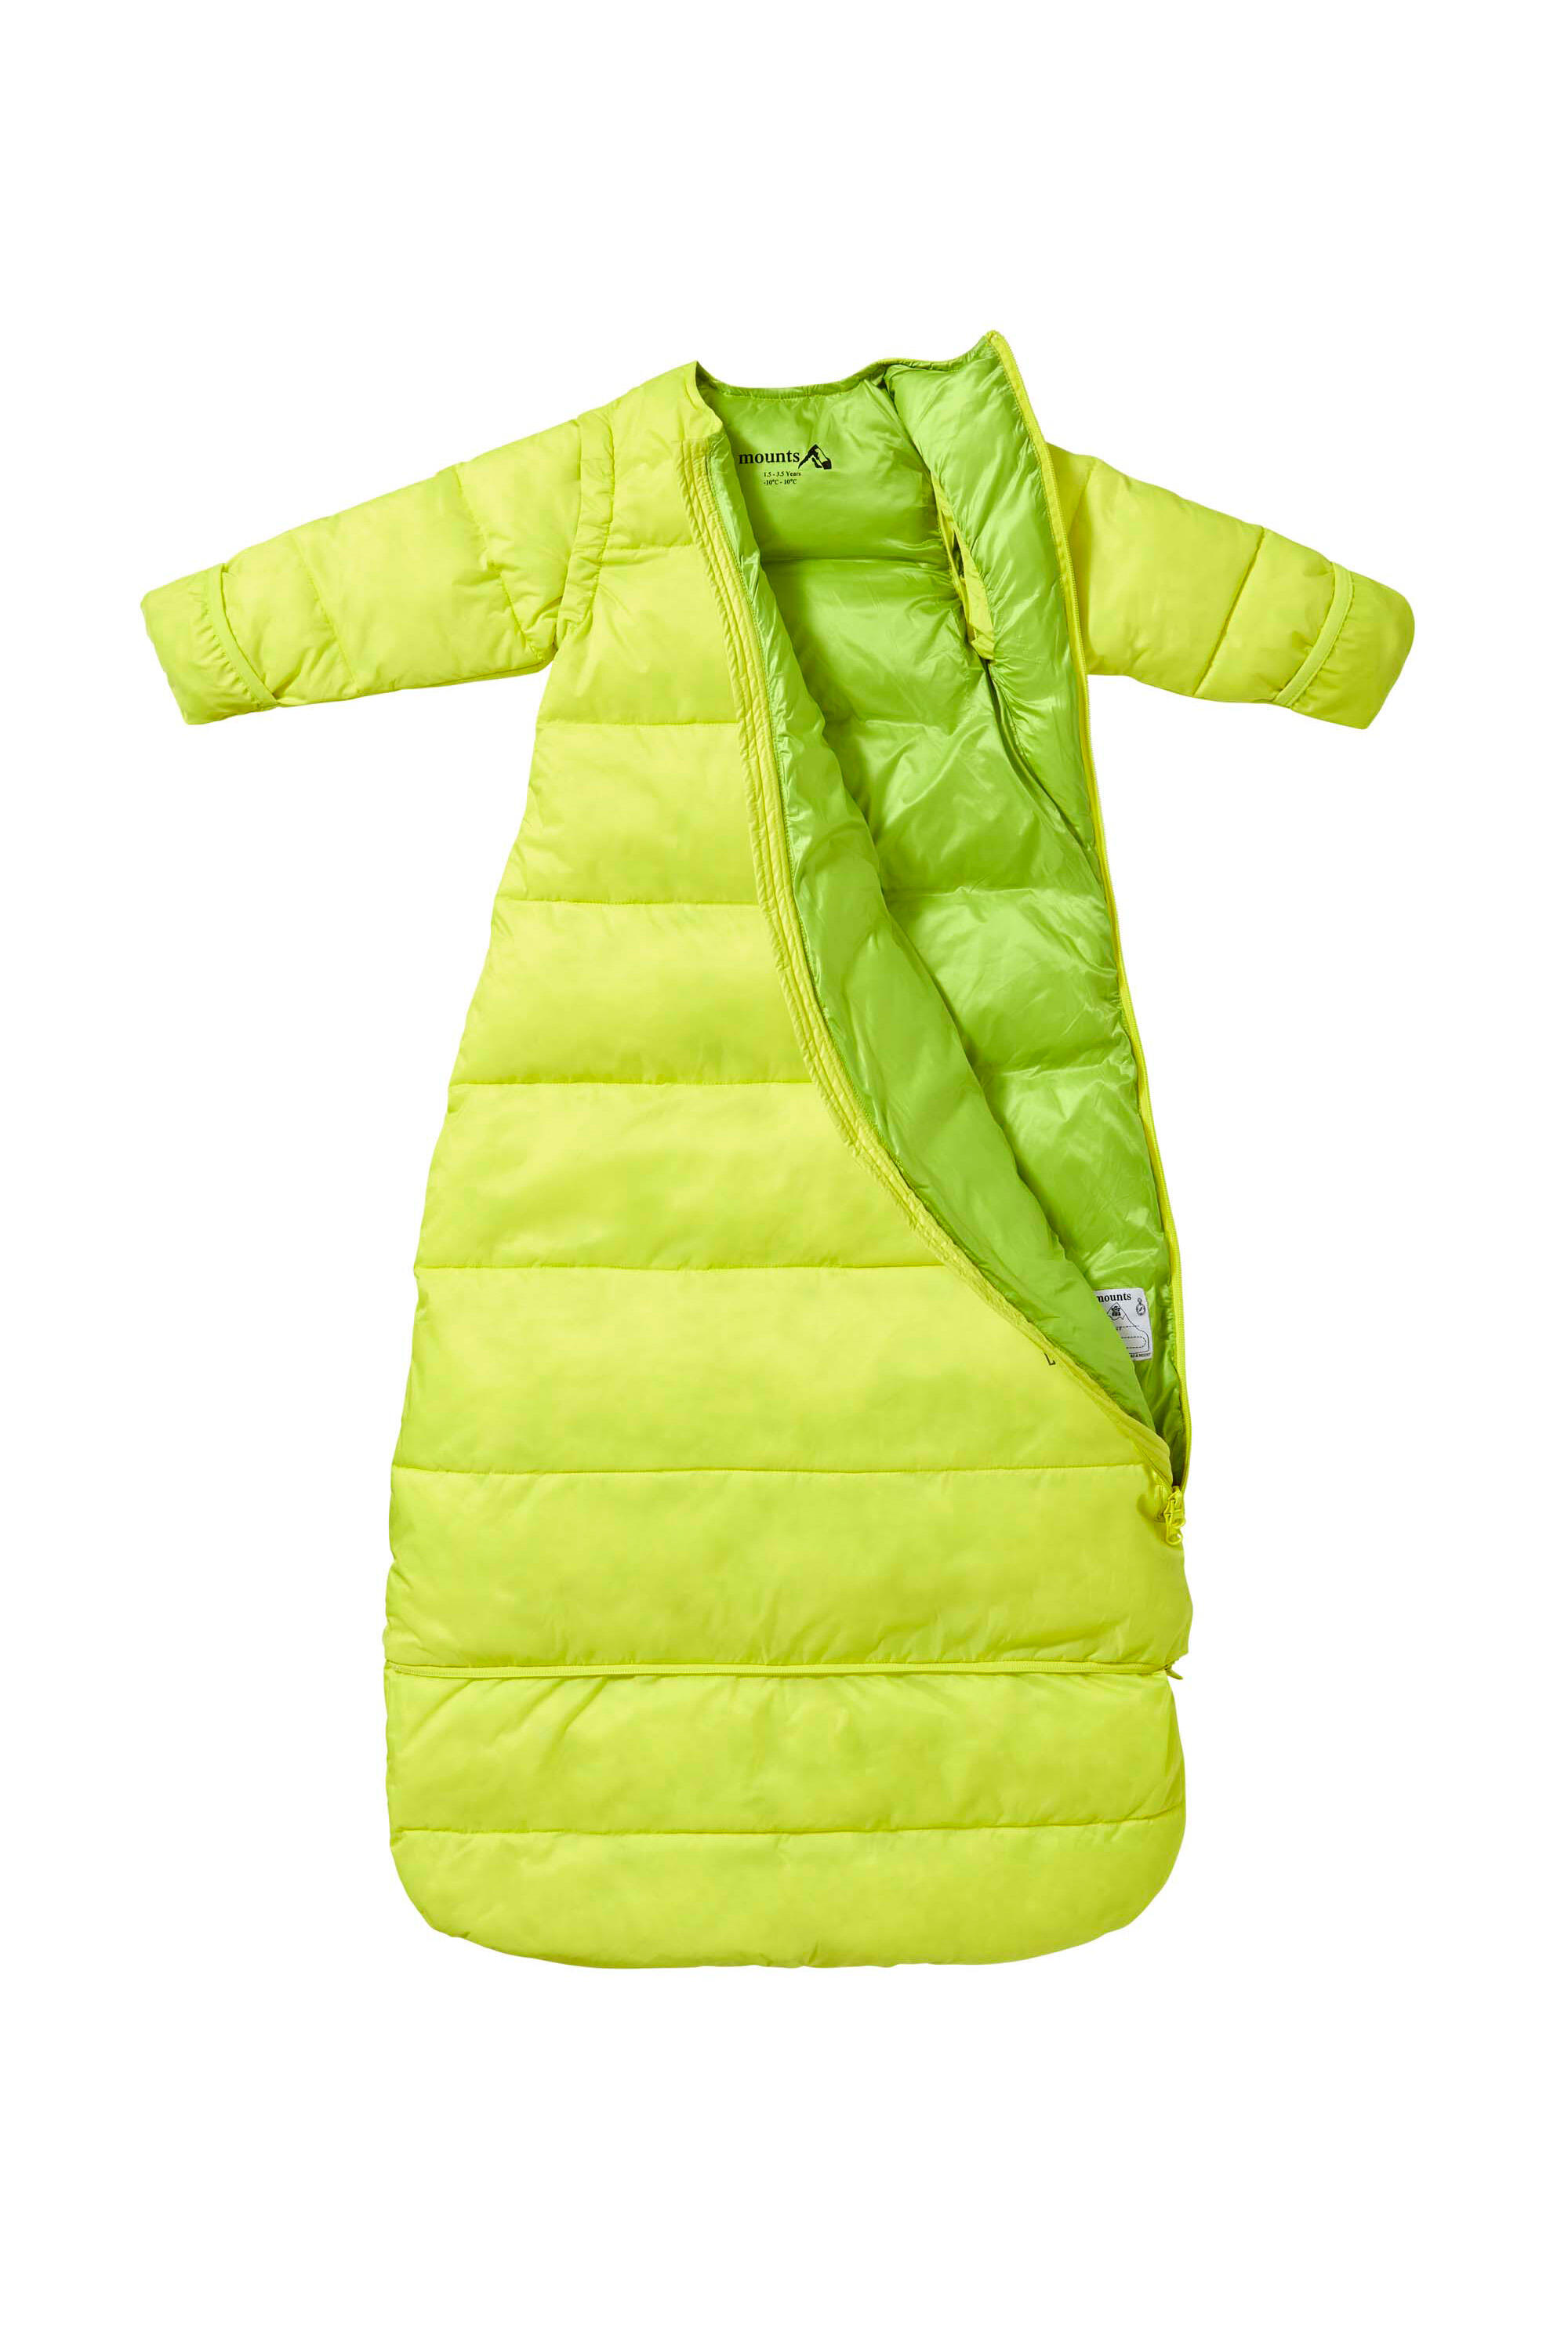 Baby/ Toddler Slumber Sack - Camping Sleeping Bag - Winter Season 3/5